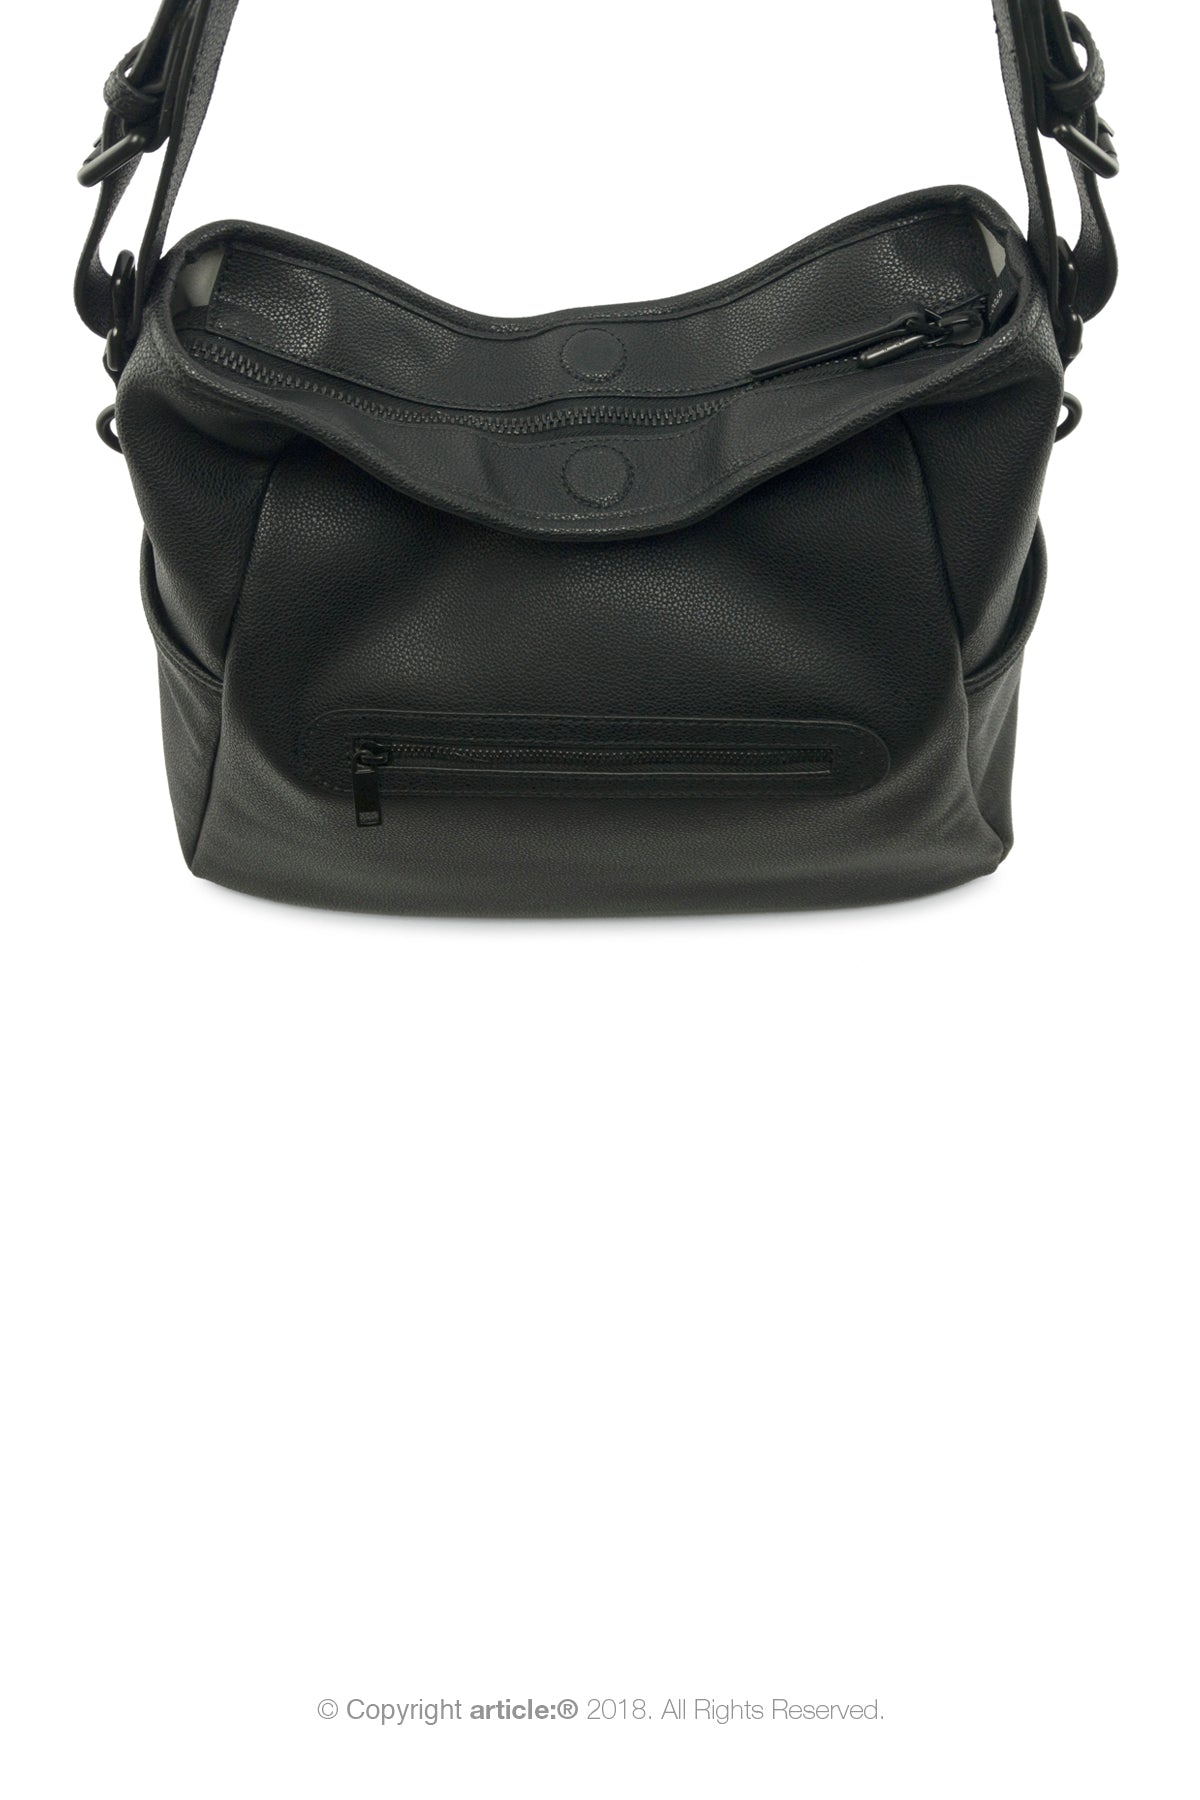 article: #130 Handbag Hobo - Noir